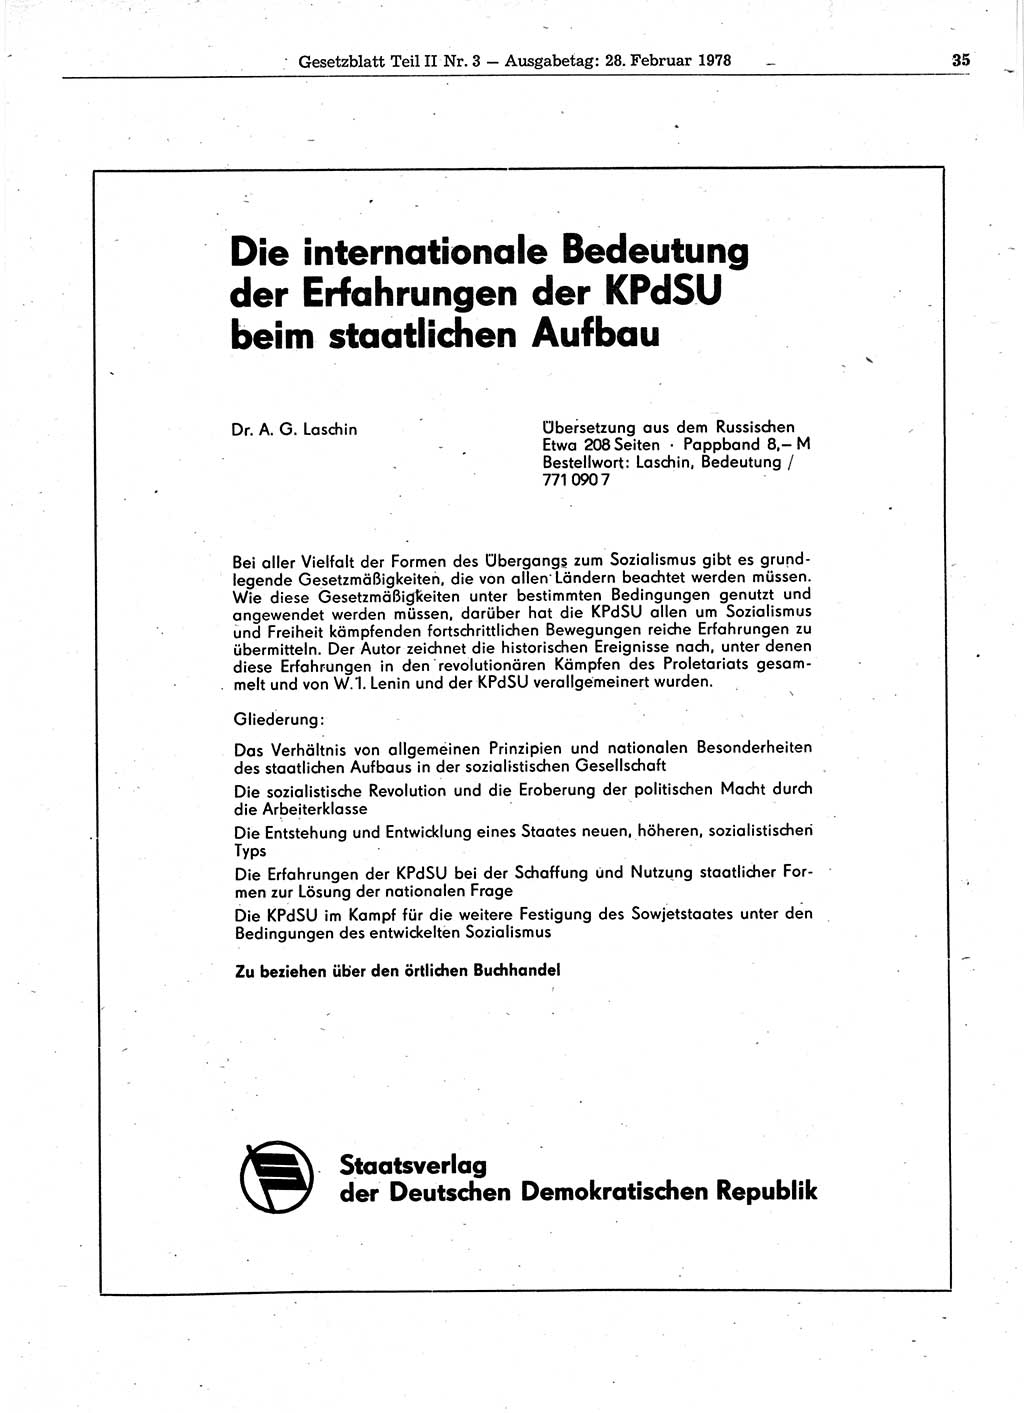 Gesetzblatt (GBl.) der Deutschen Demokratischen Republik (DDR) Teil ⅠⅠ 1978, Seite 35 (GBl. DDR ⅠⅠ 1978, S. 35)